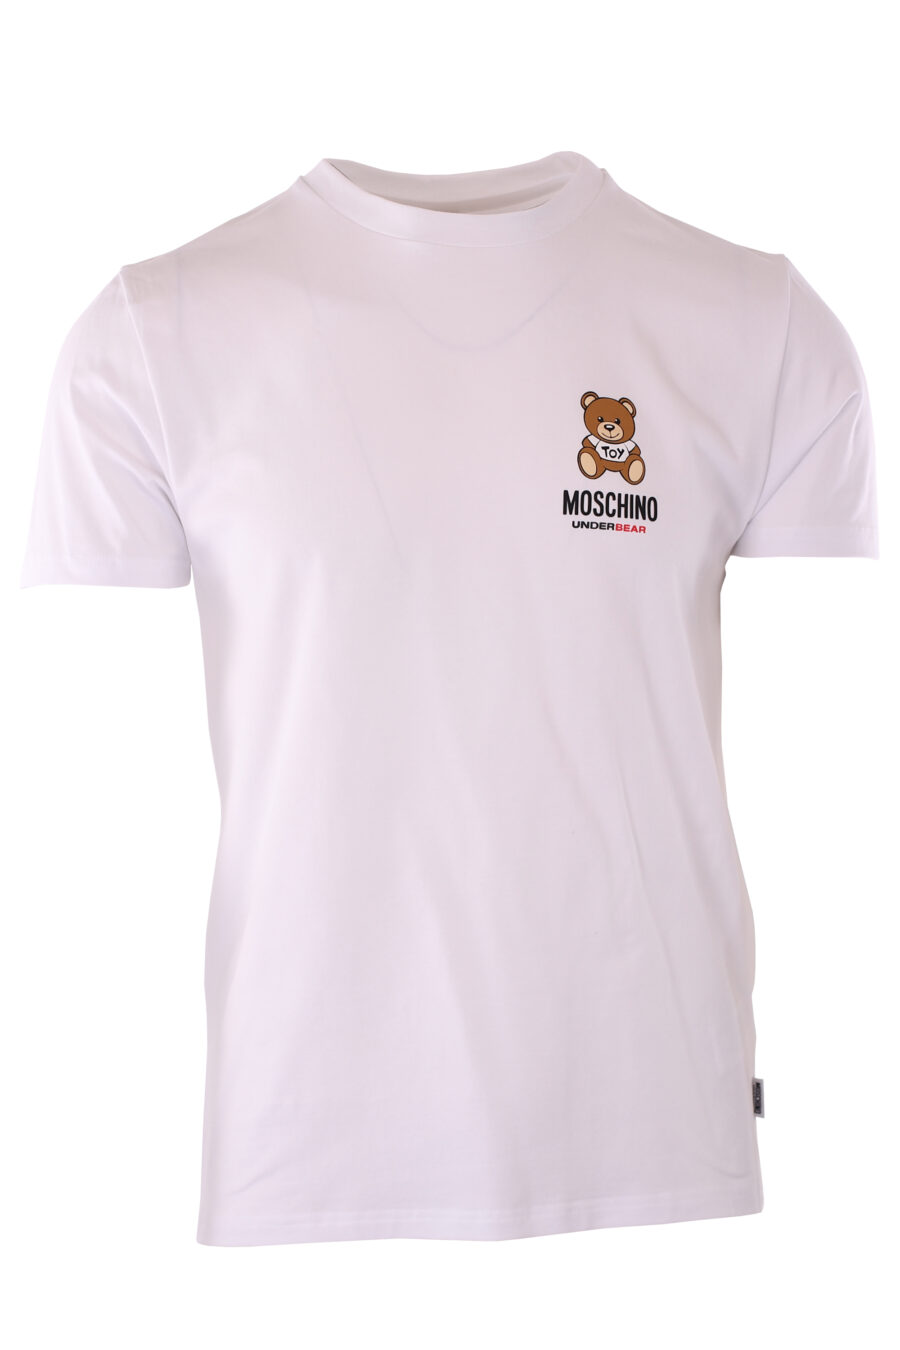 T-shirt blanc avec le logo d'un petit ours "underbear" - IMG 6609